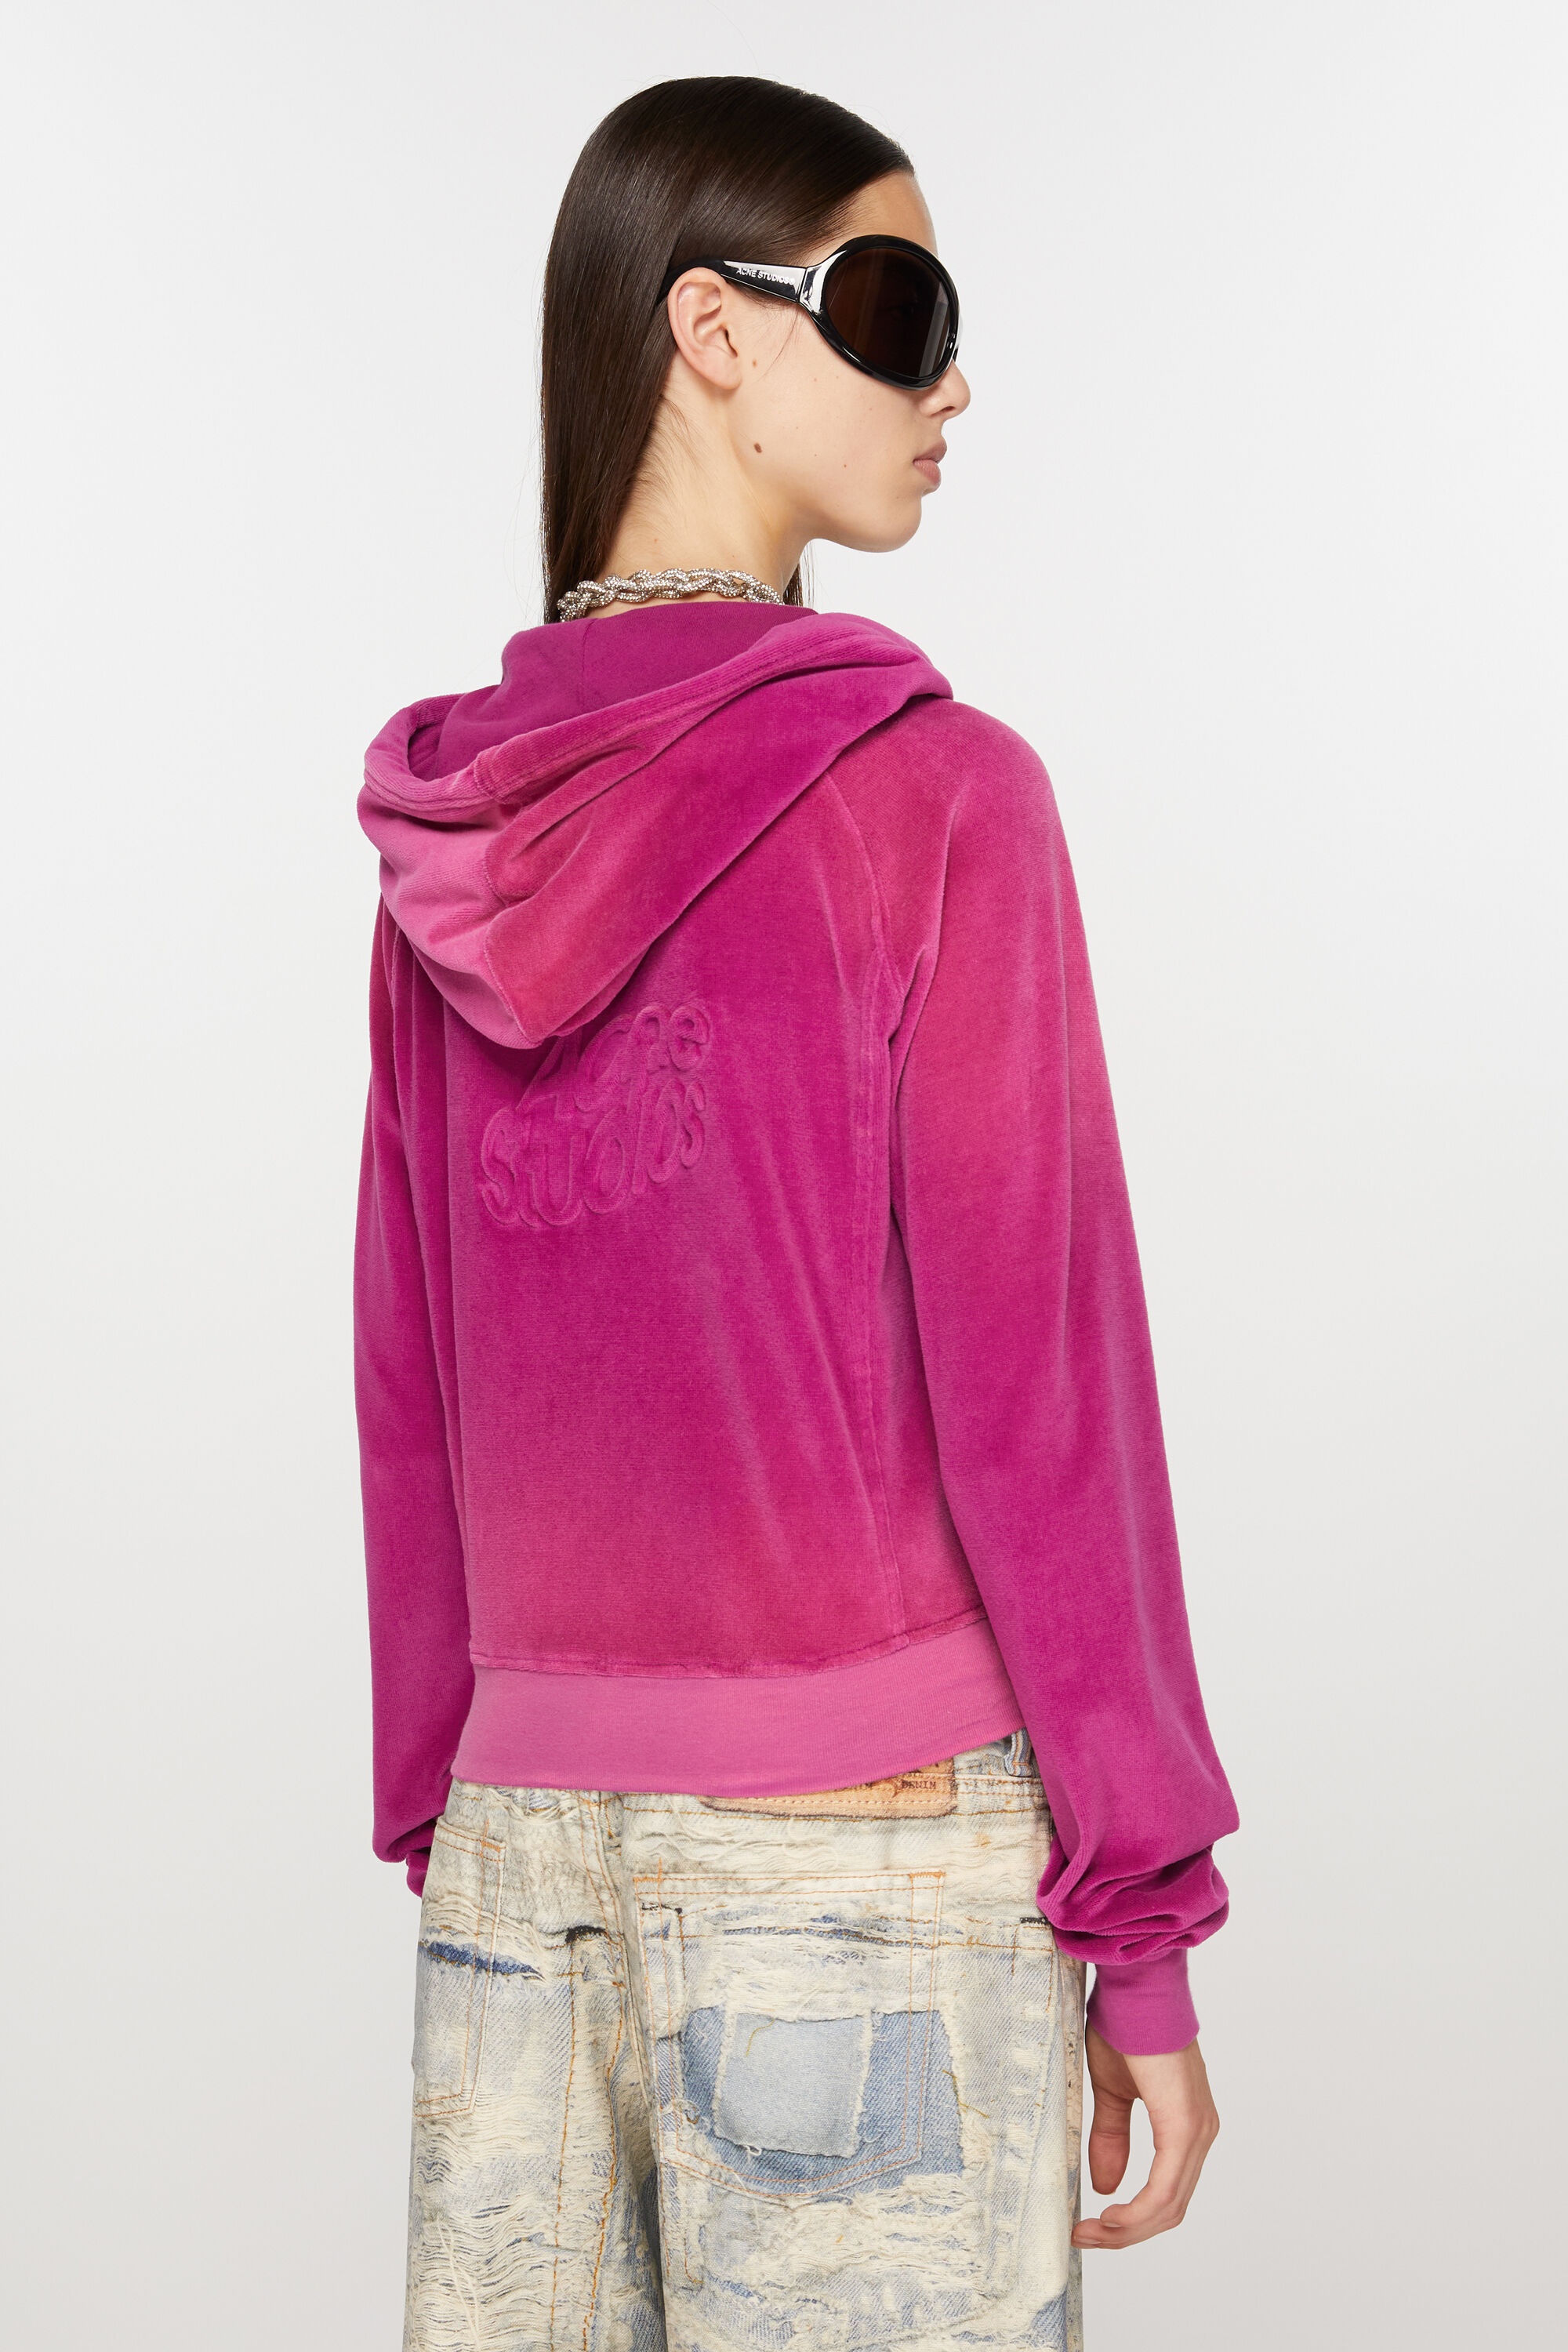 Hooded zip sweater velvet - Magenta pink - 3